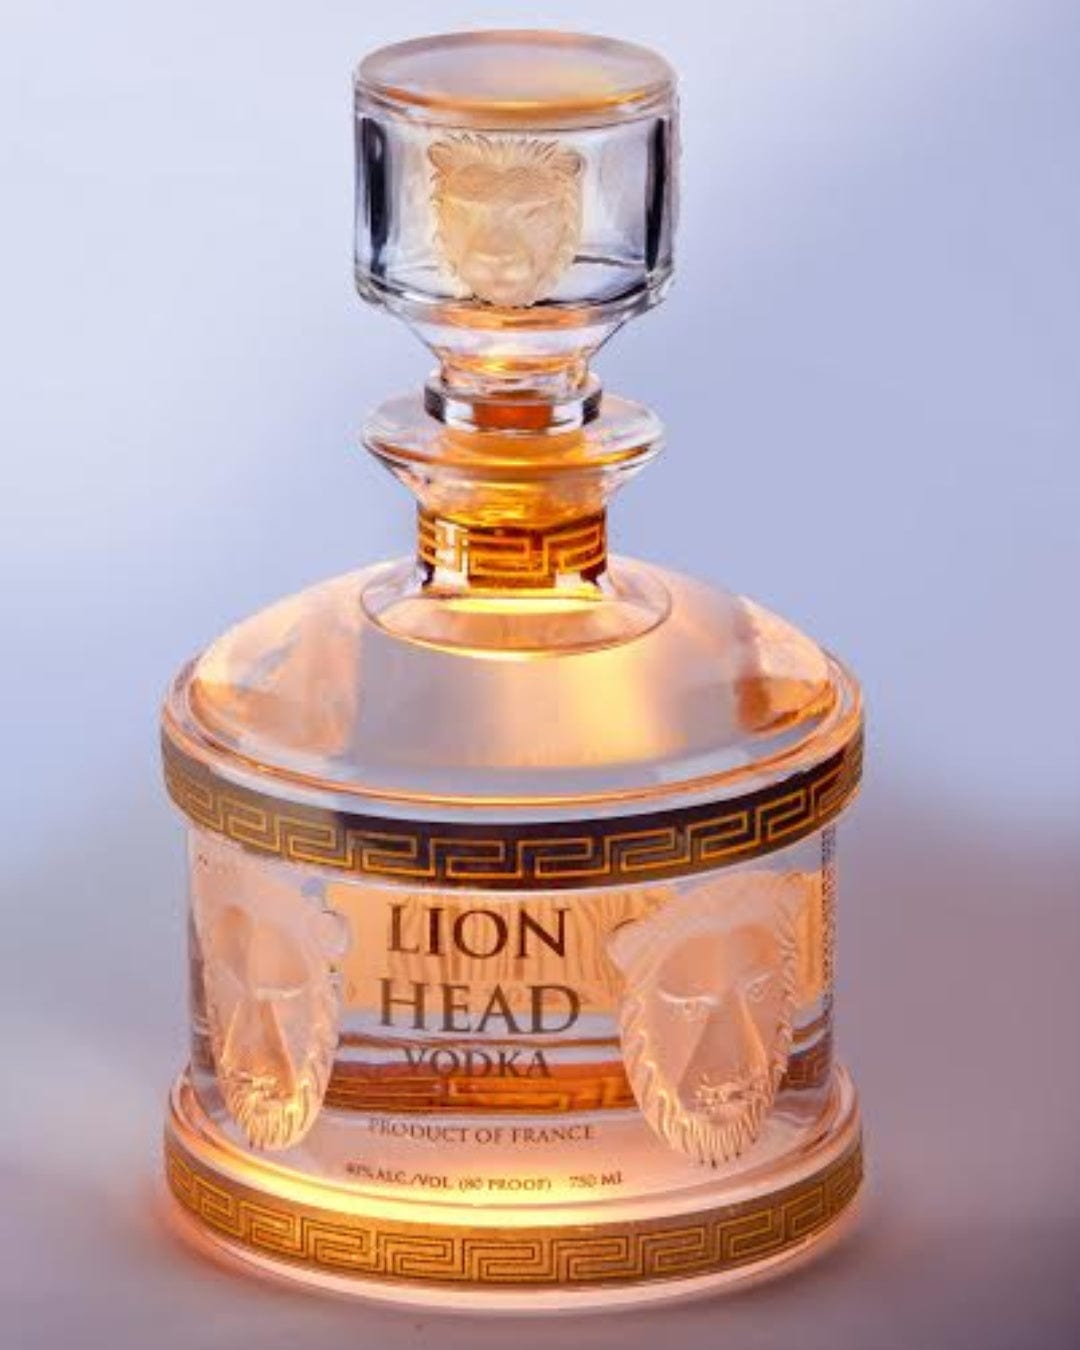 Lion Head Vodka, 75 cl